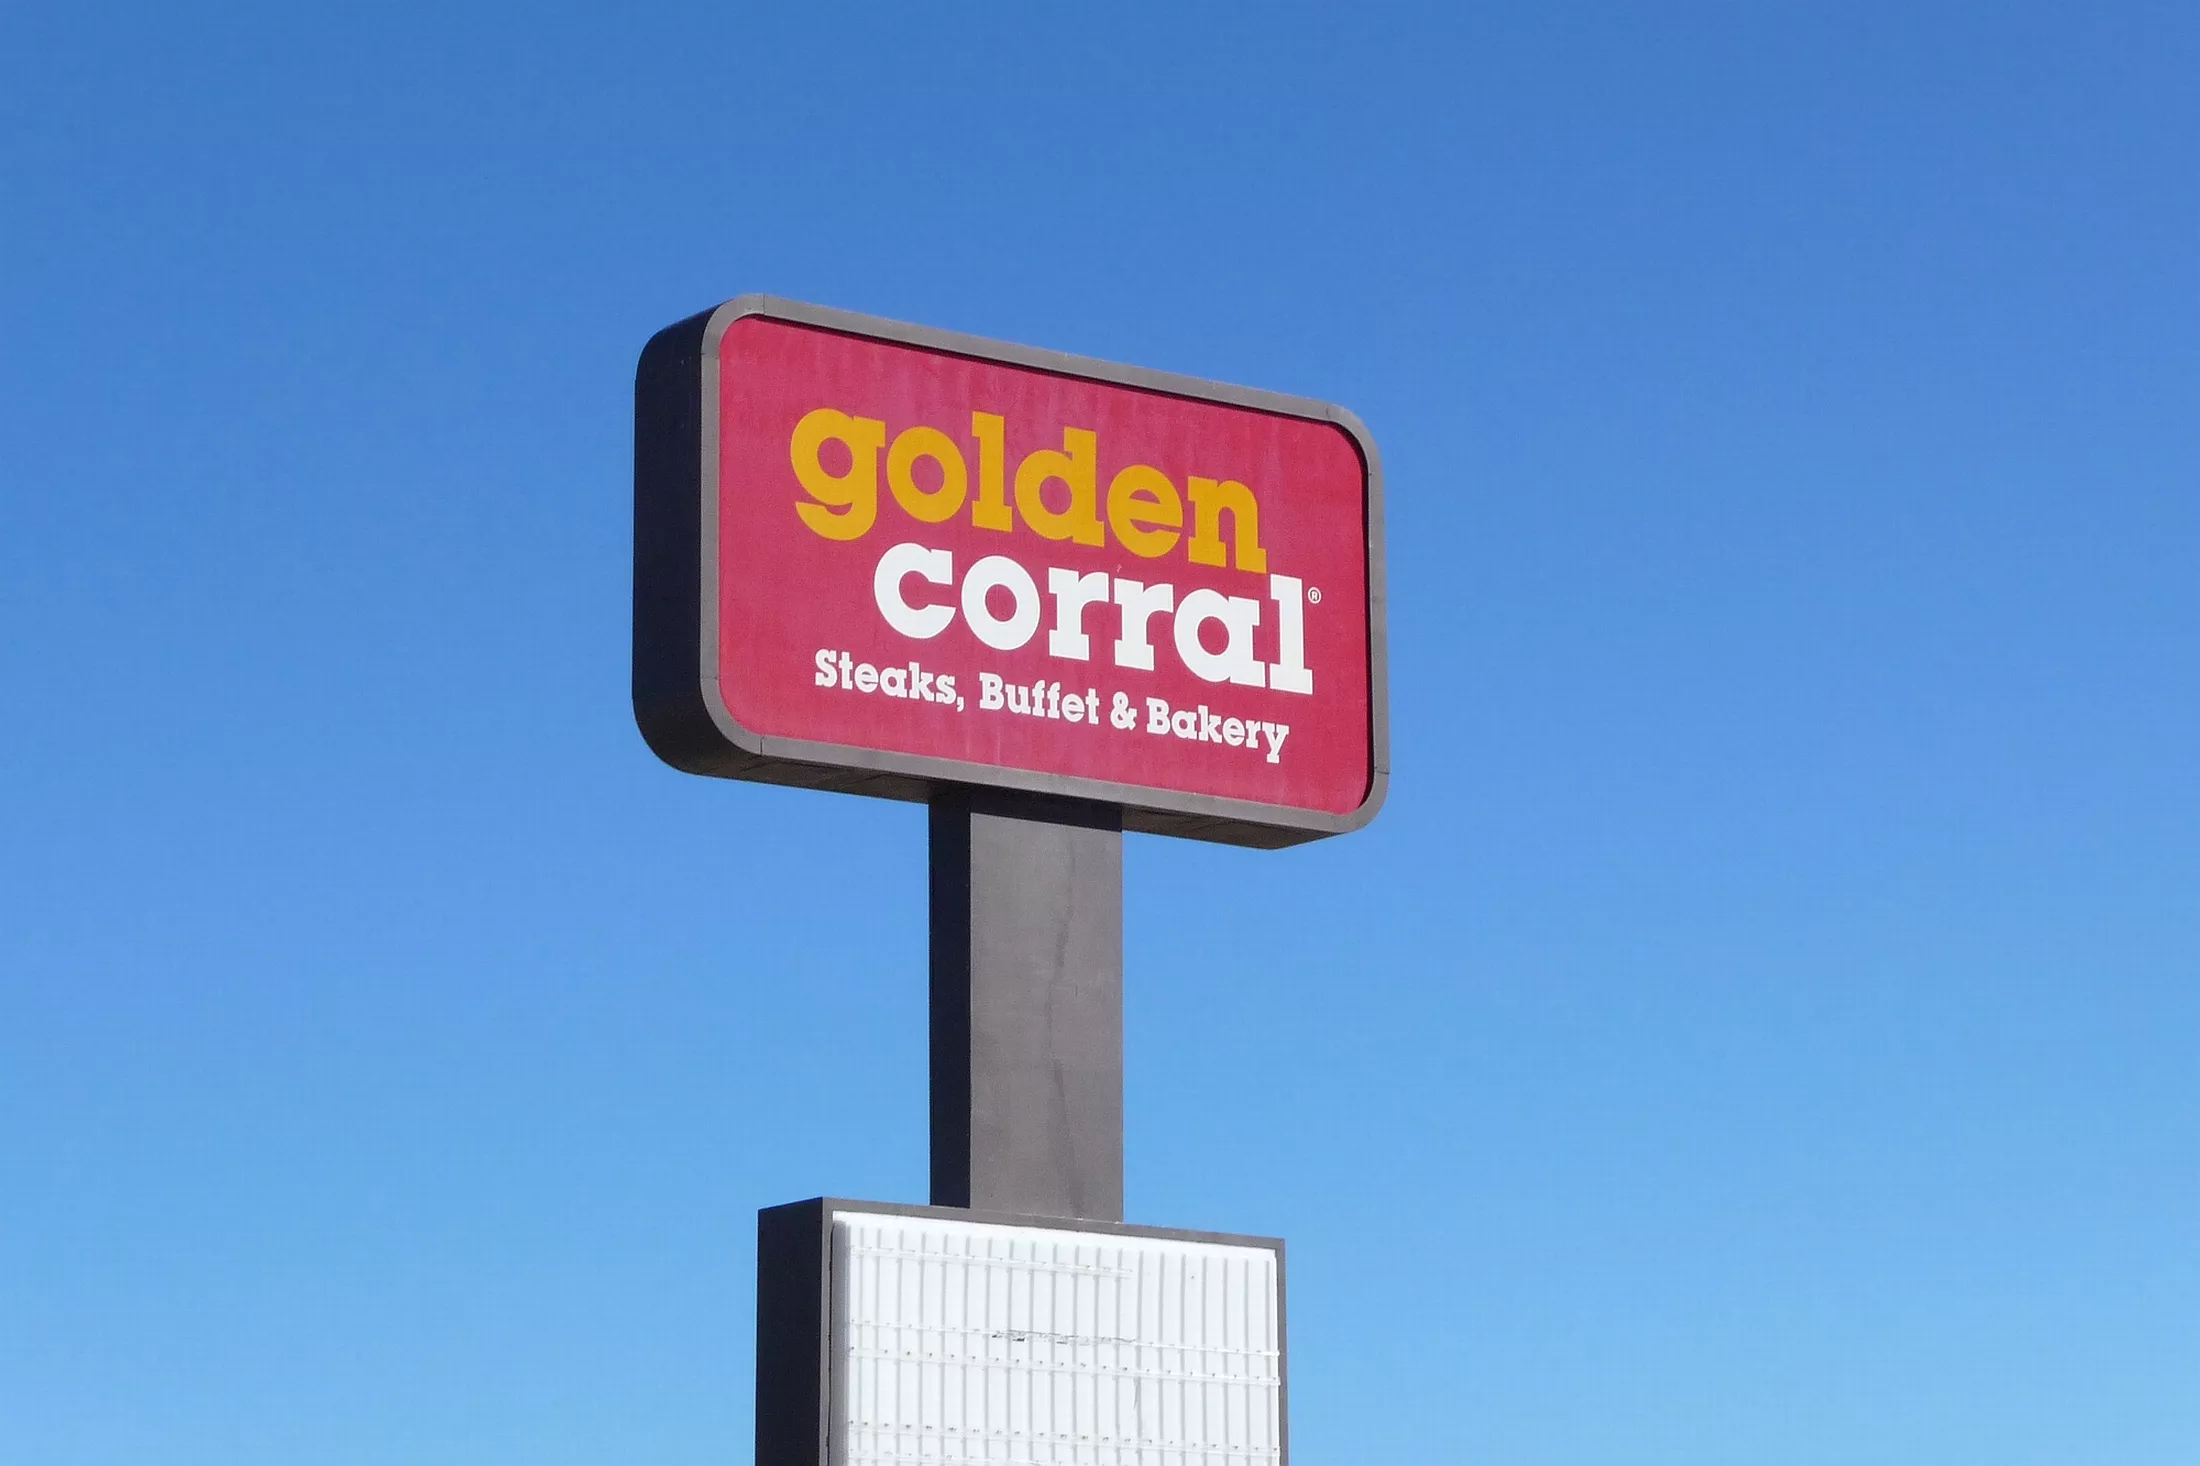  restaurante buffet golden corral 